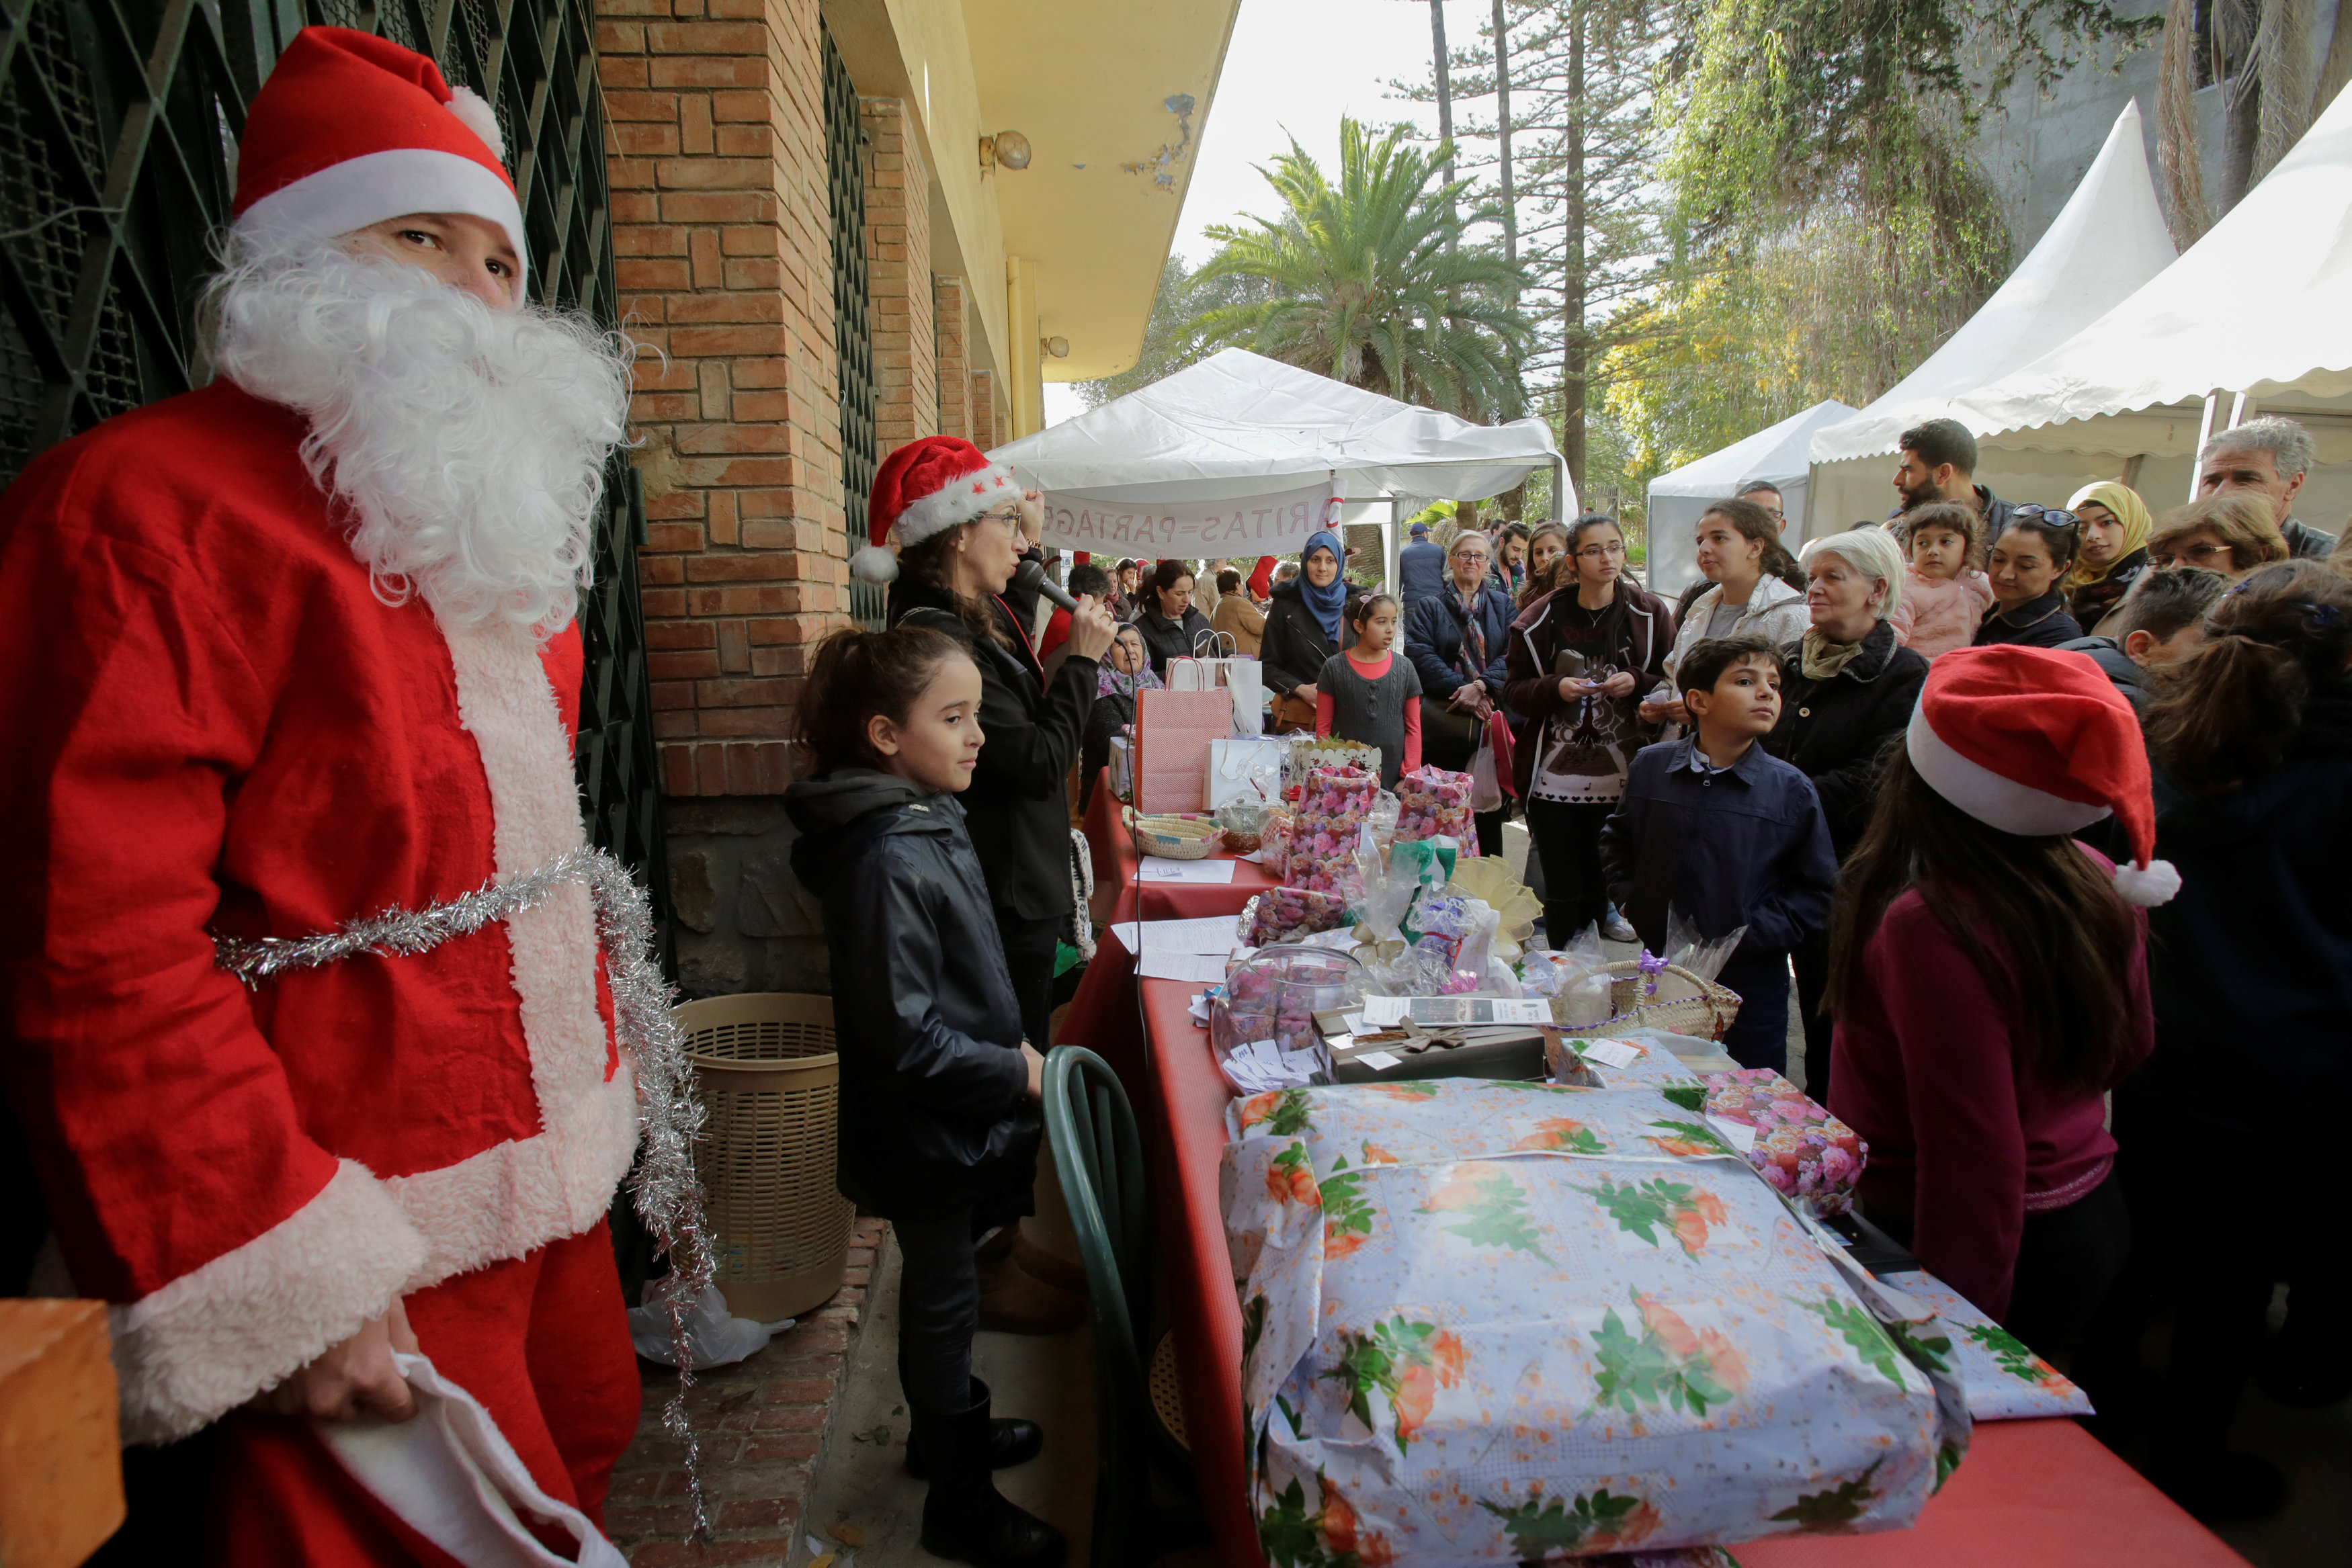 Χριστουγεννιάτικη αγορά άνοιξε στην αλγερινή πρωτεύουσα